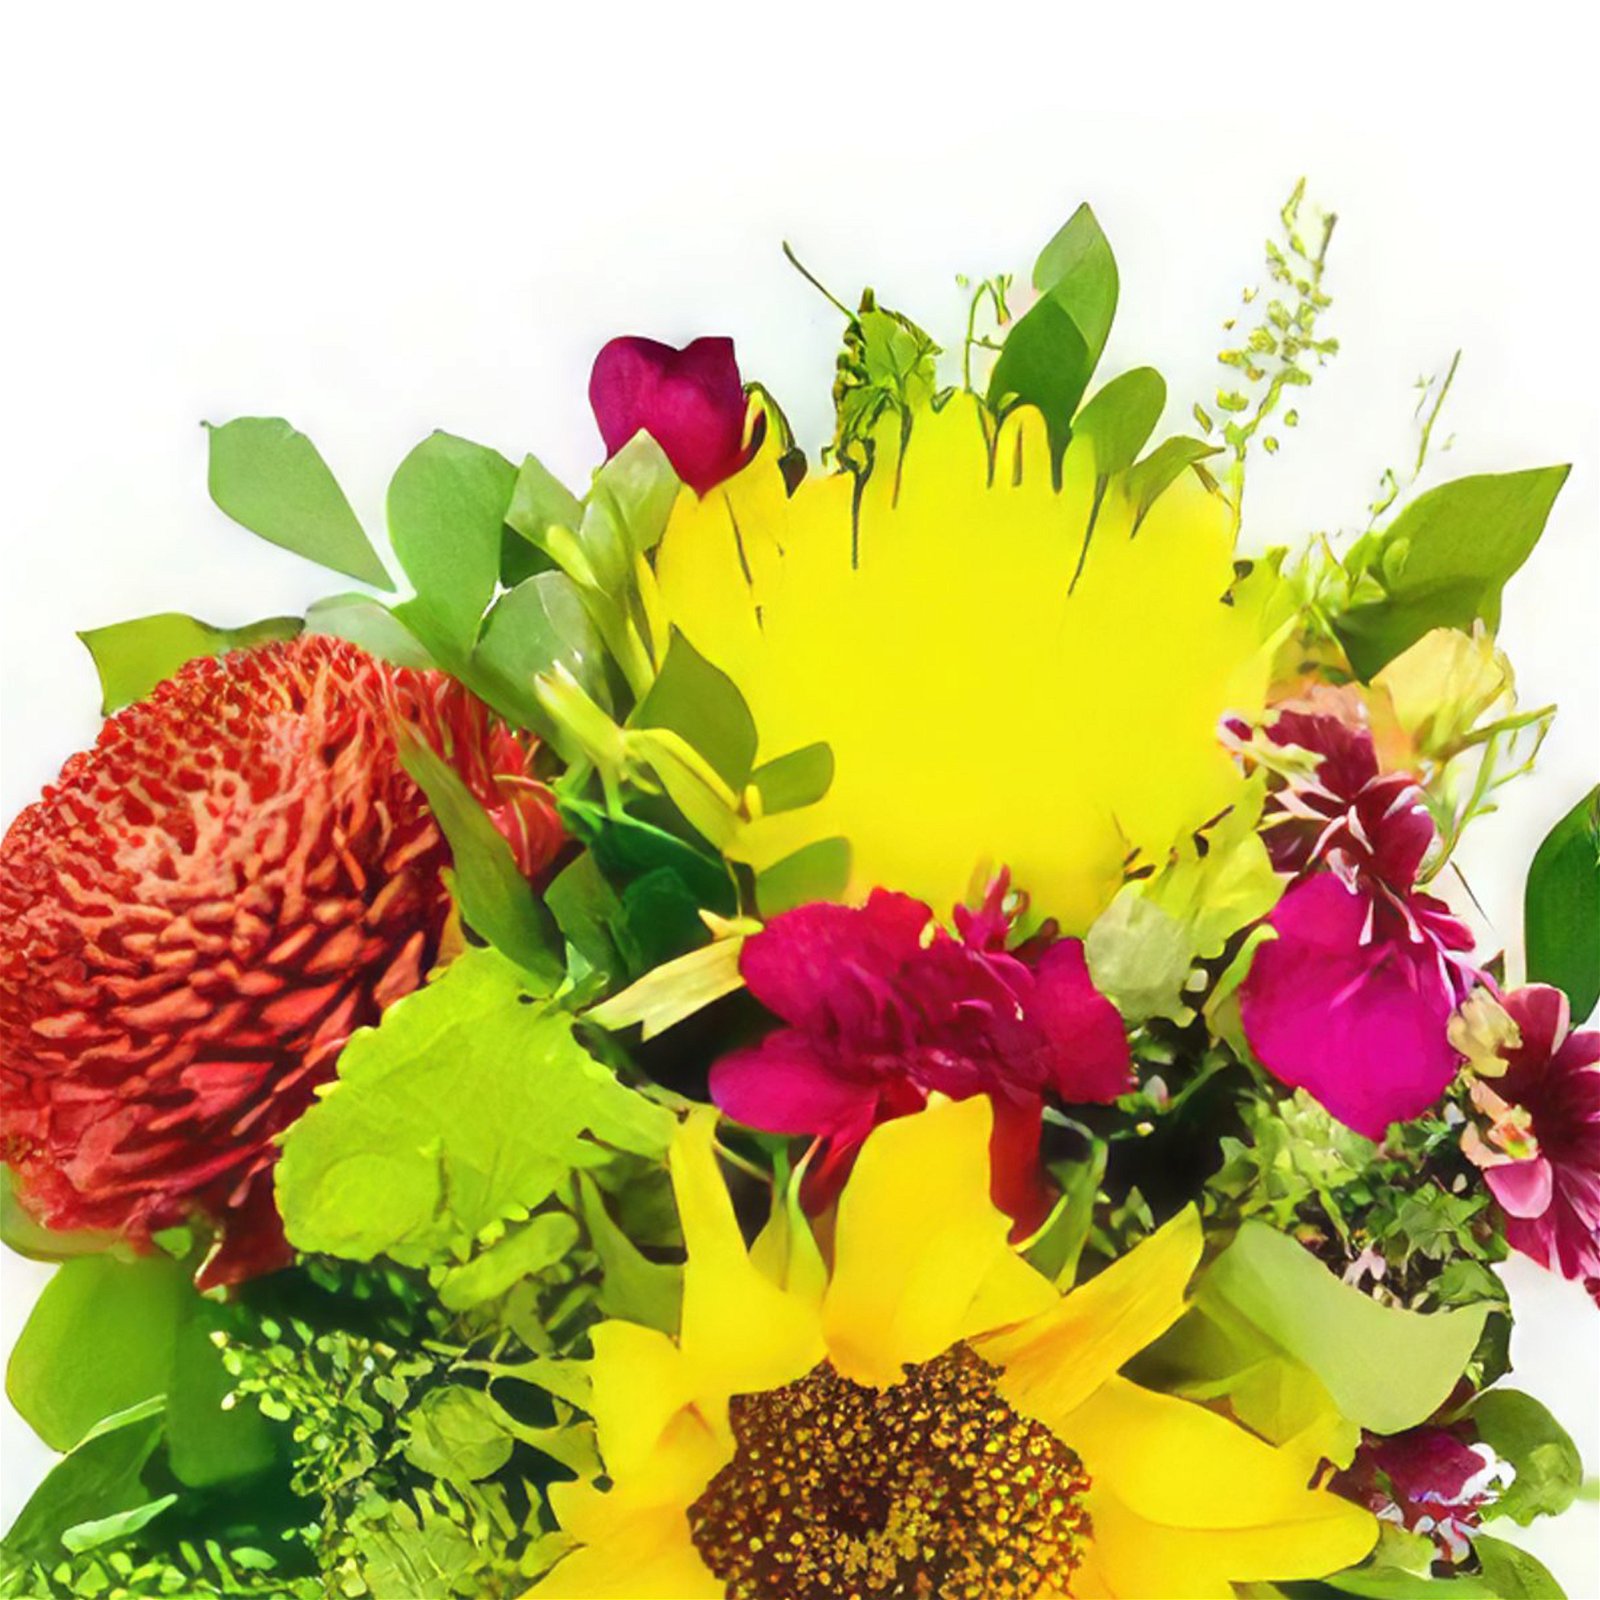 Boyeros Blumen Florist- Frühlingsliebe Bouquet/Blumenschmuck